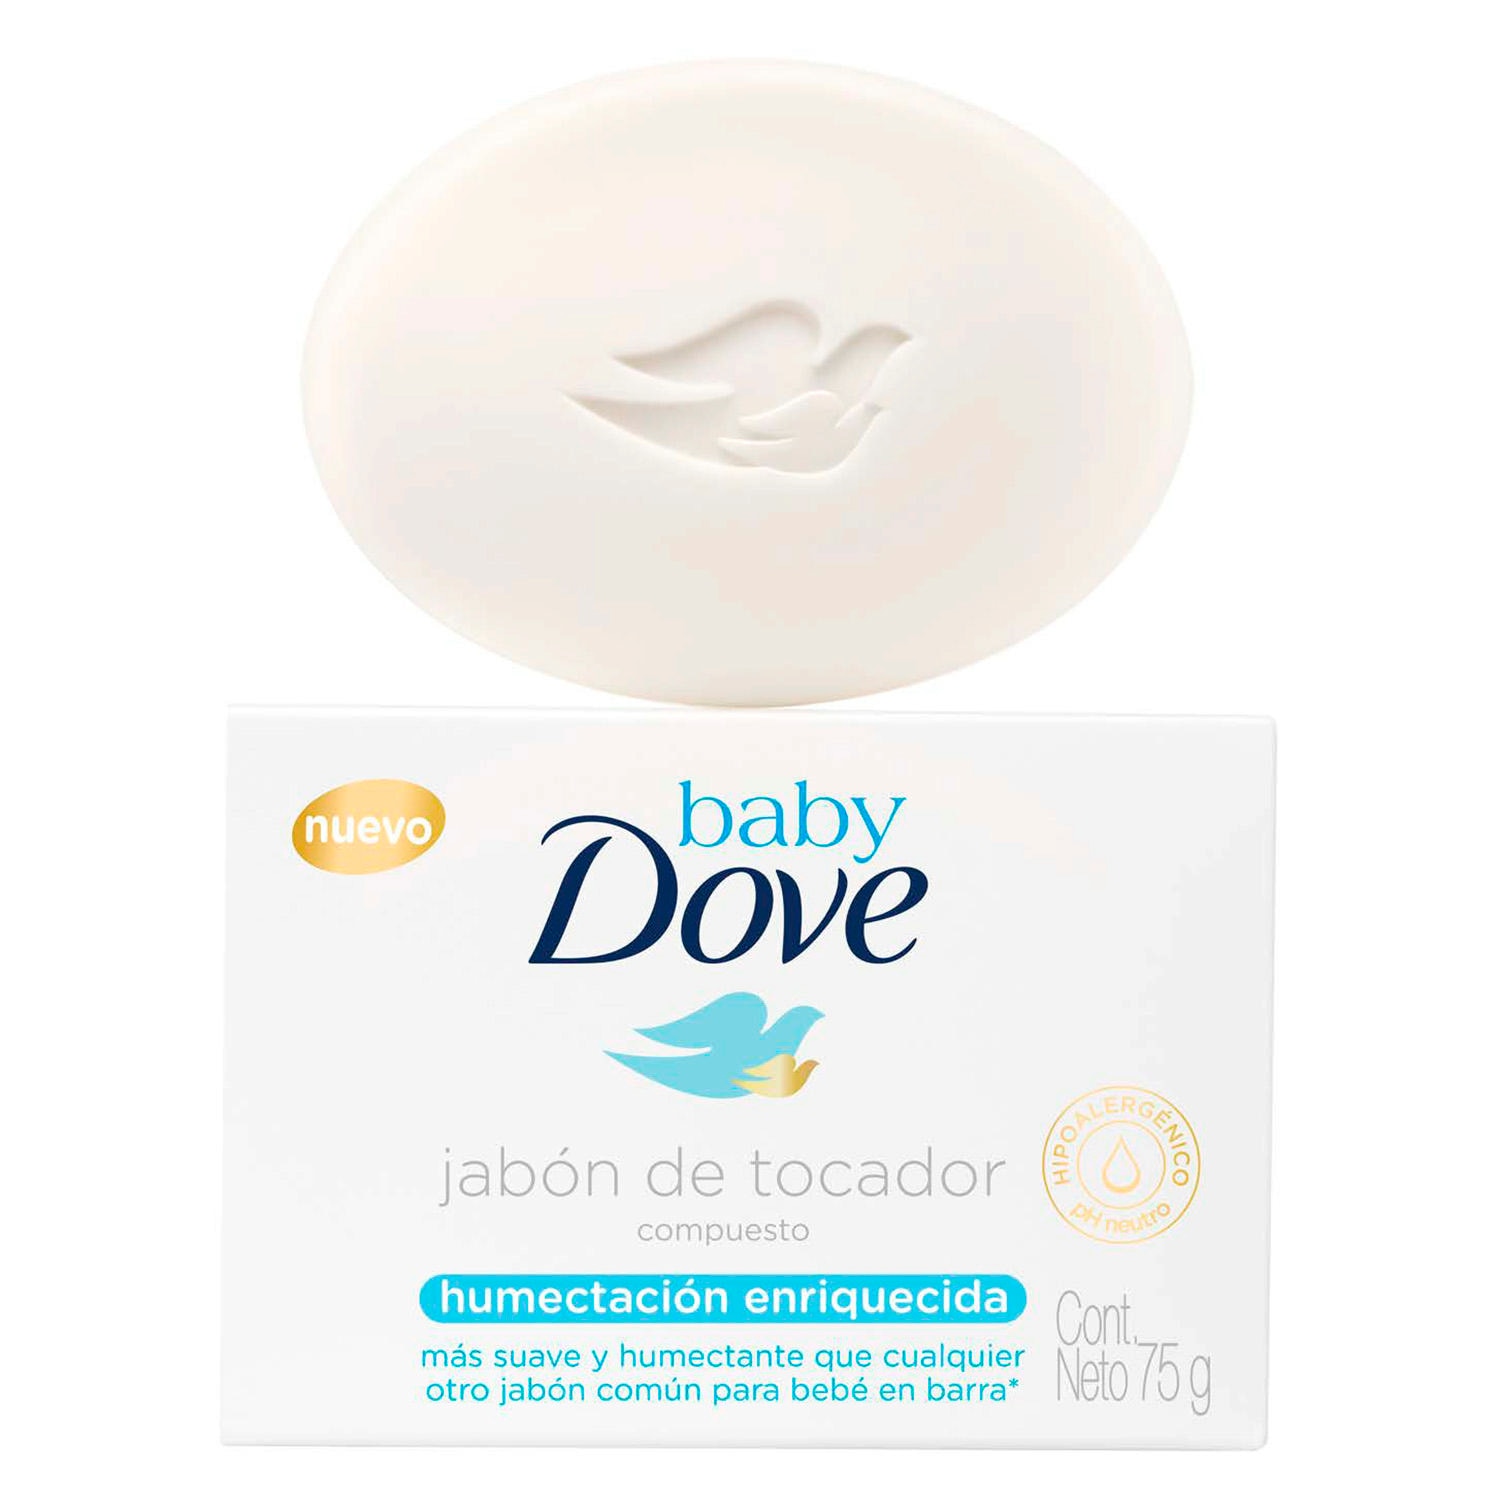 Baby Dove jabón de tocador compuesto. Humectación enriquecida.